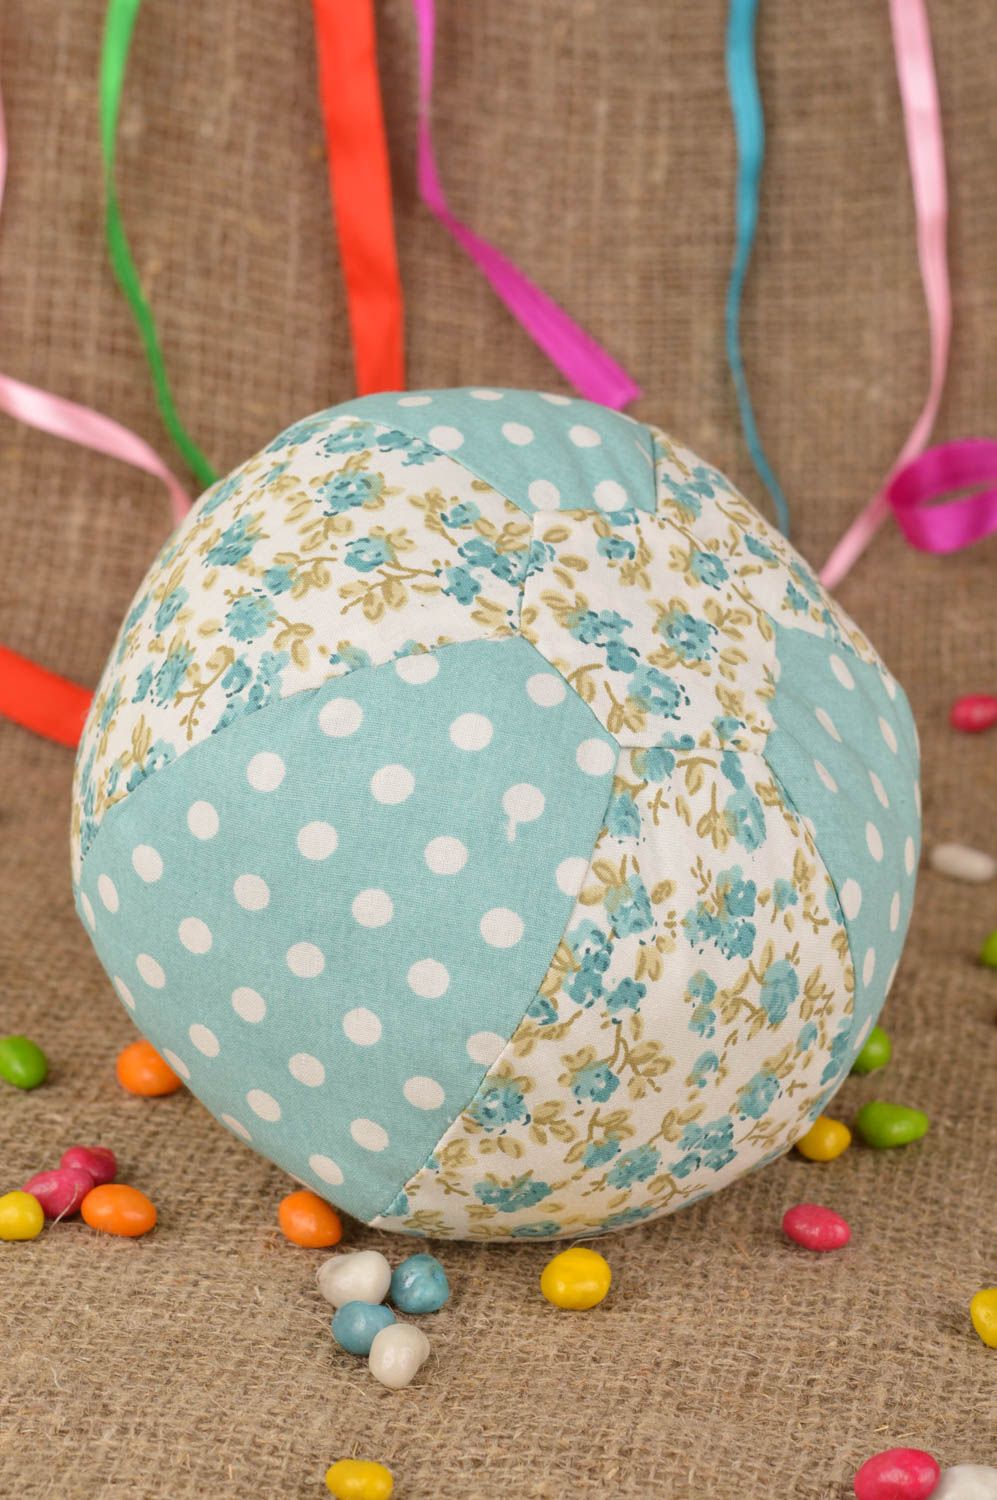 Textil Spielzeug Ball mit Blumenmuster aus Baumwolle handmade für Kinder foto 1